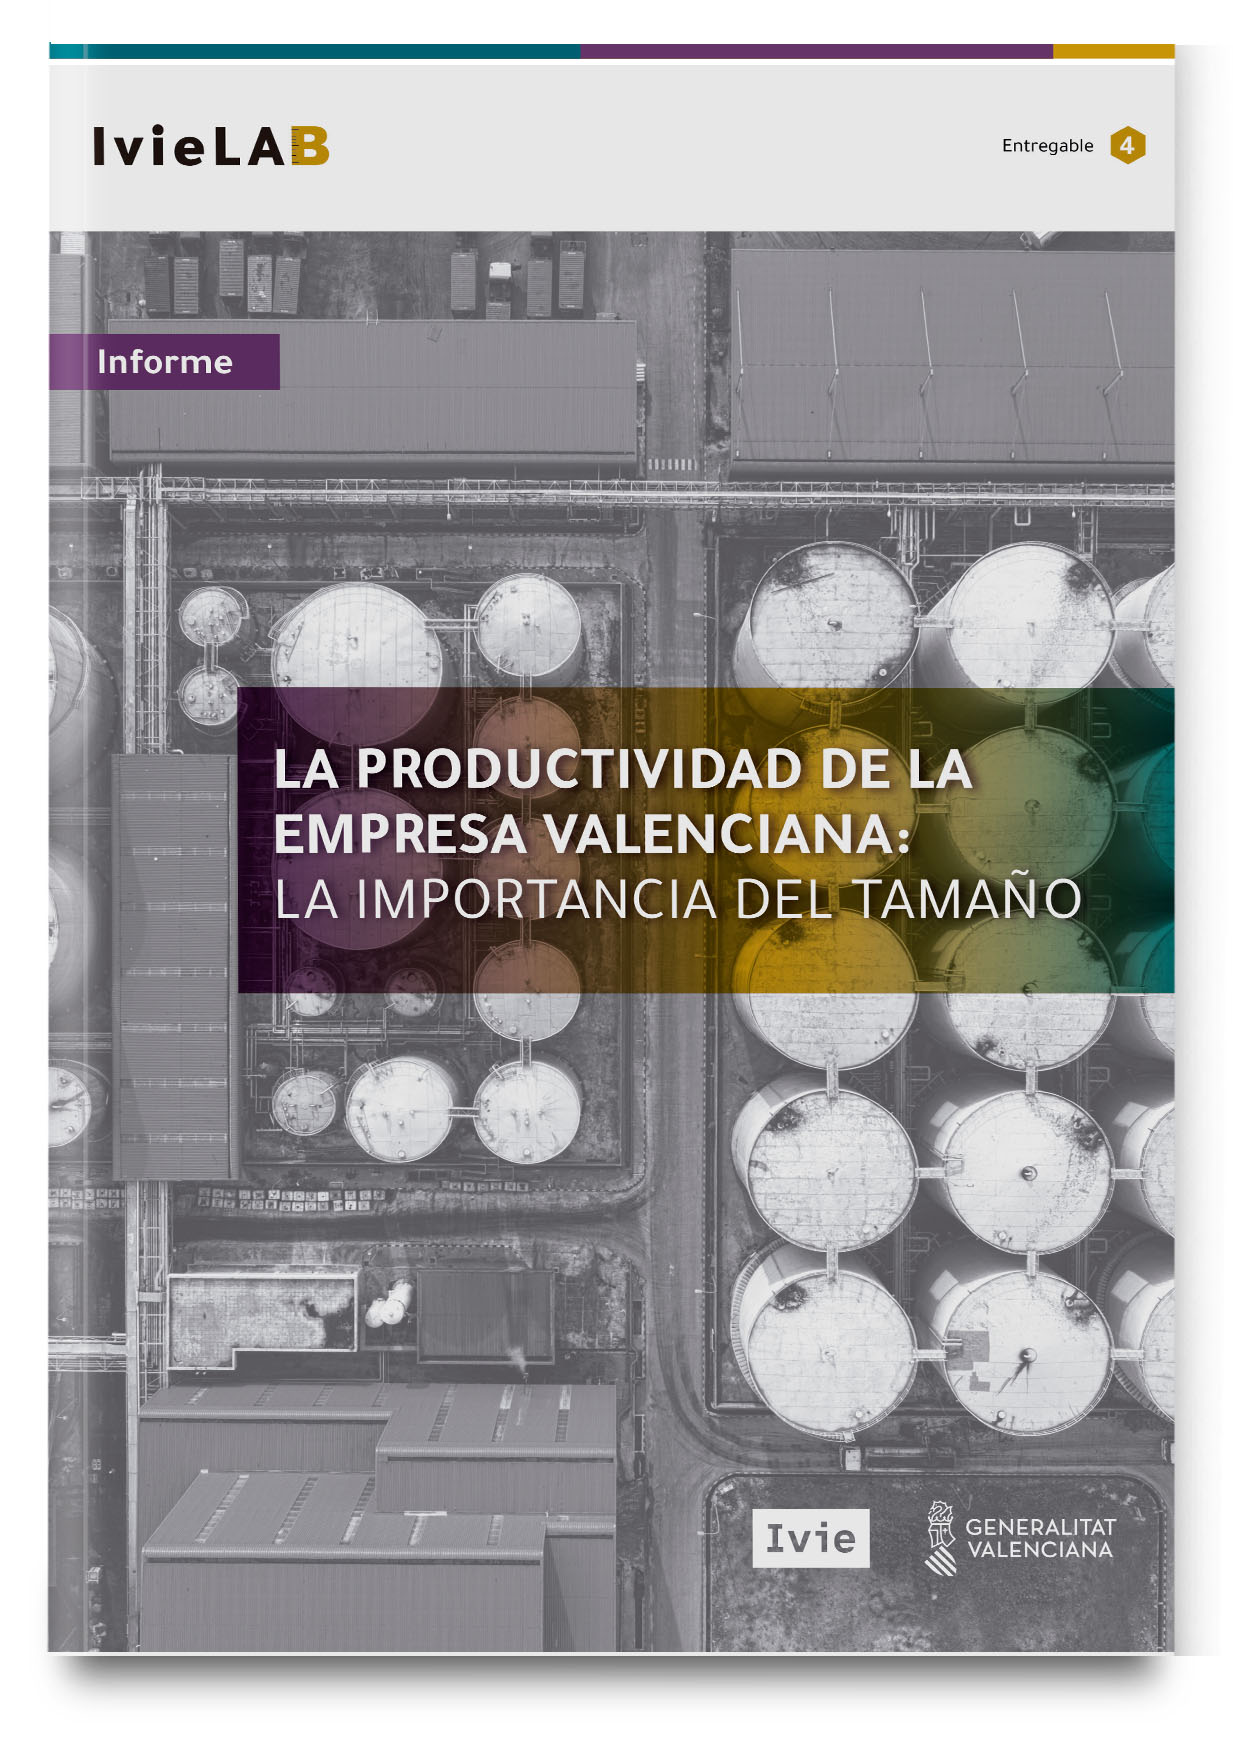 IvieLAB. La productividad de la empresa valenciana: la importancia del tamaño